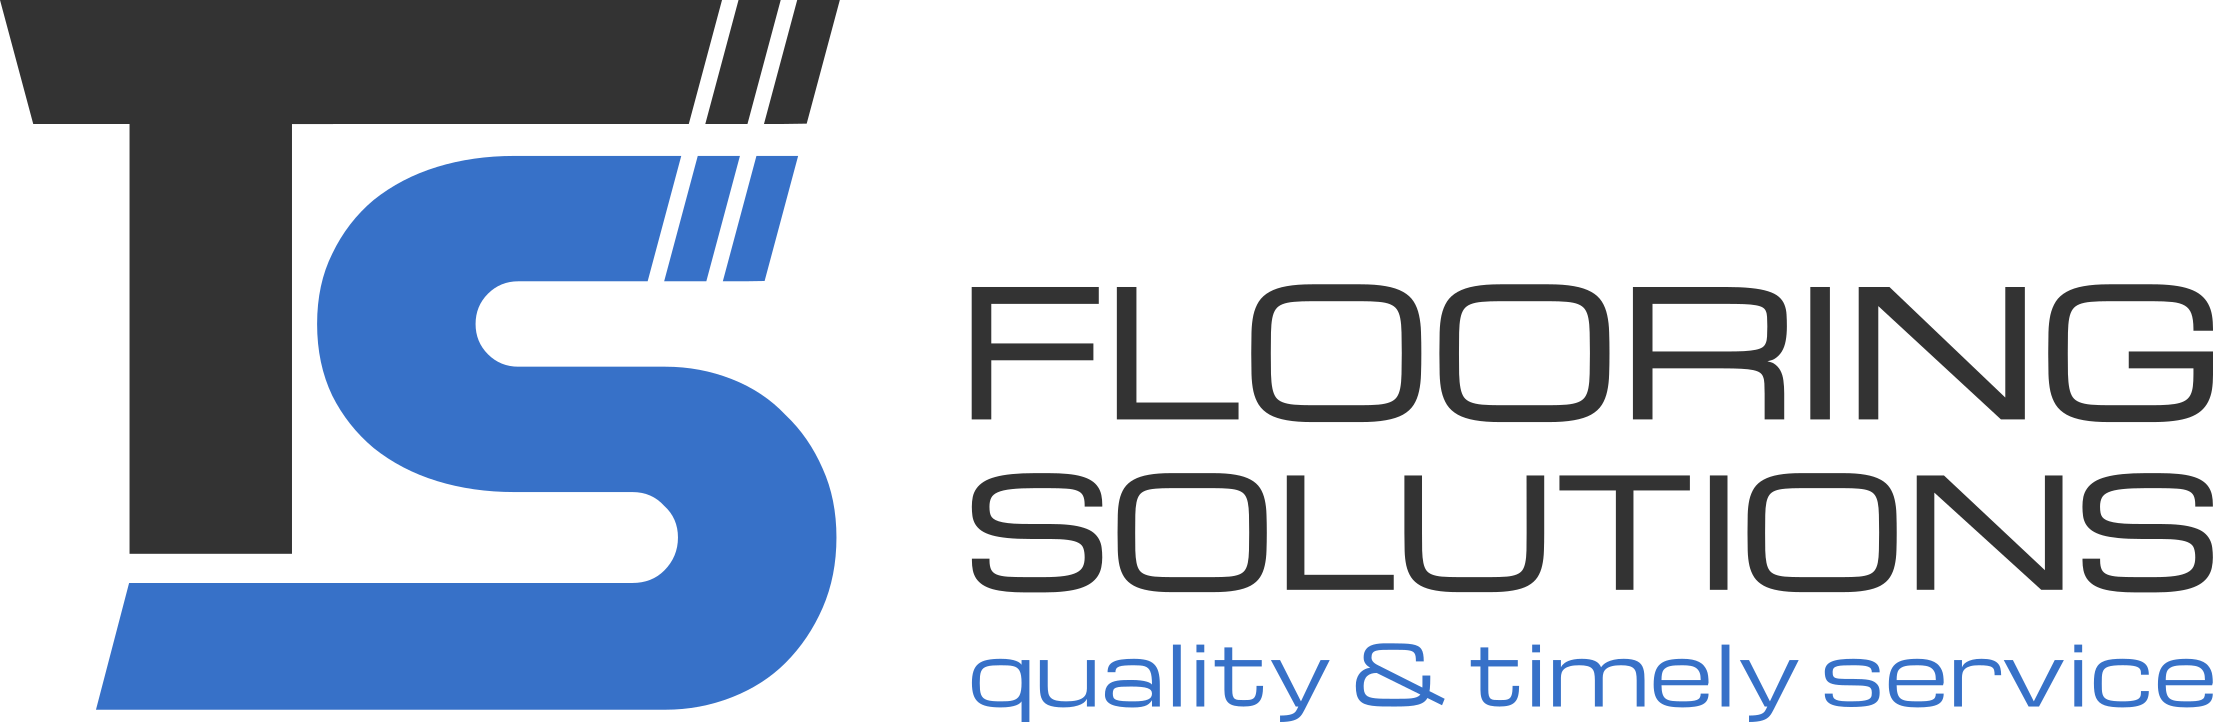 Logo ts flooring